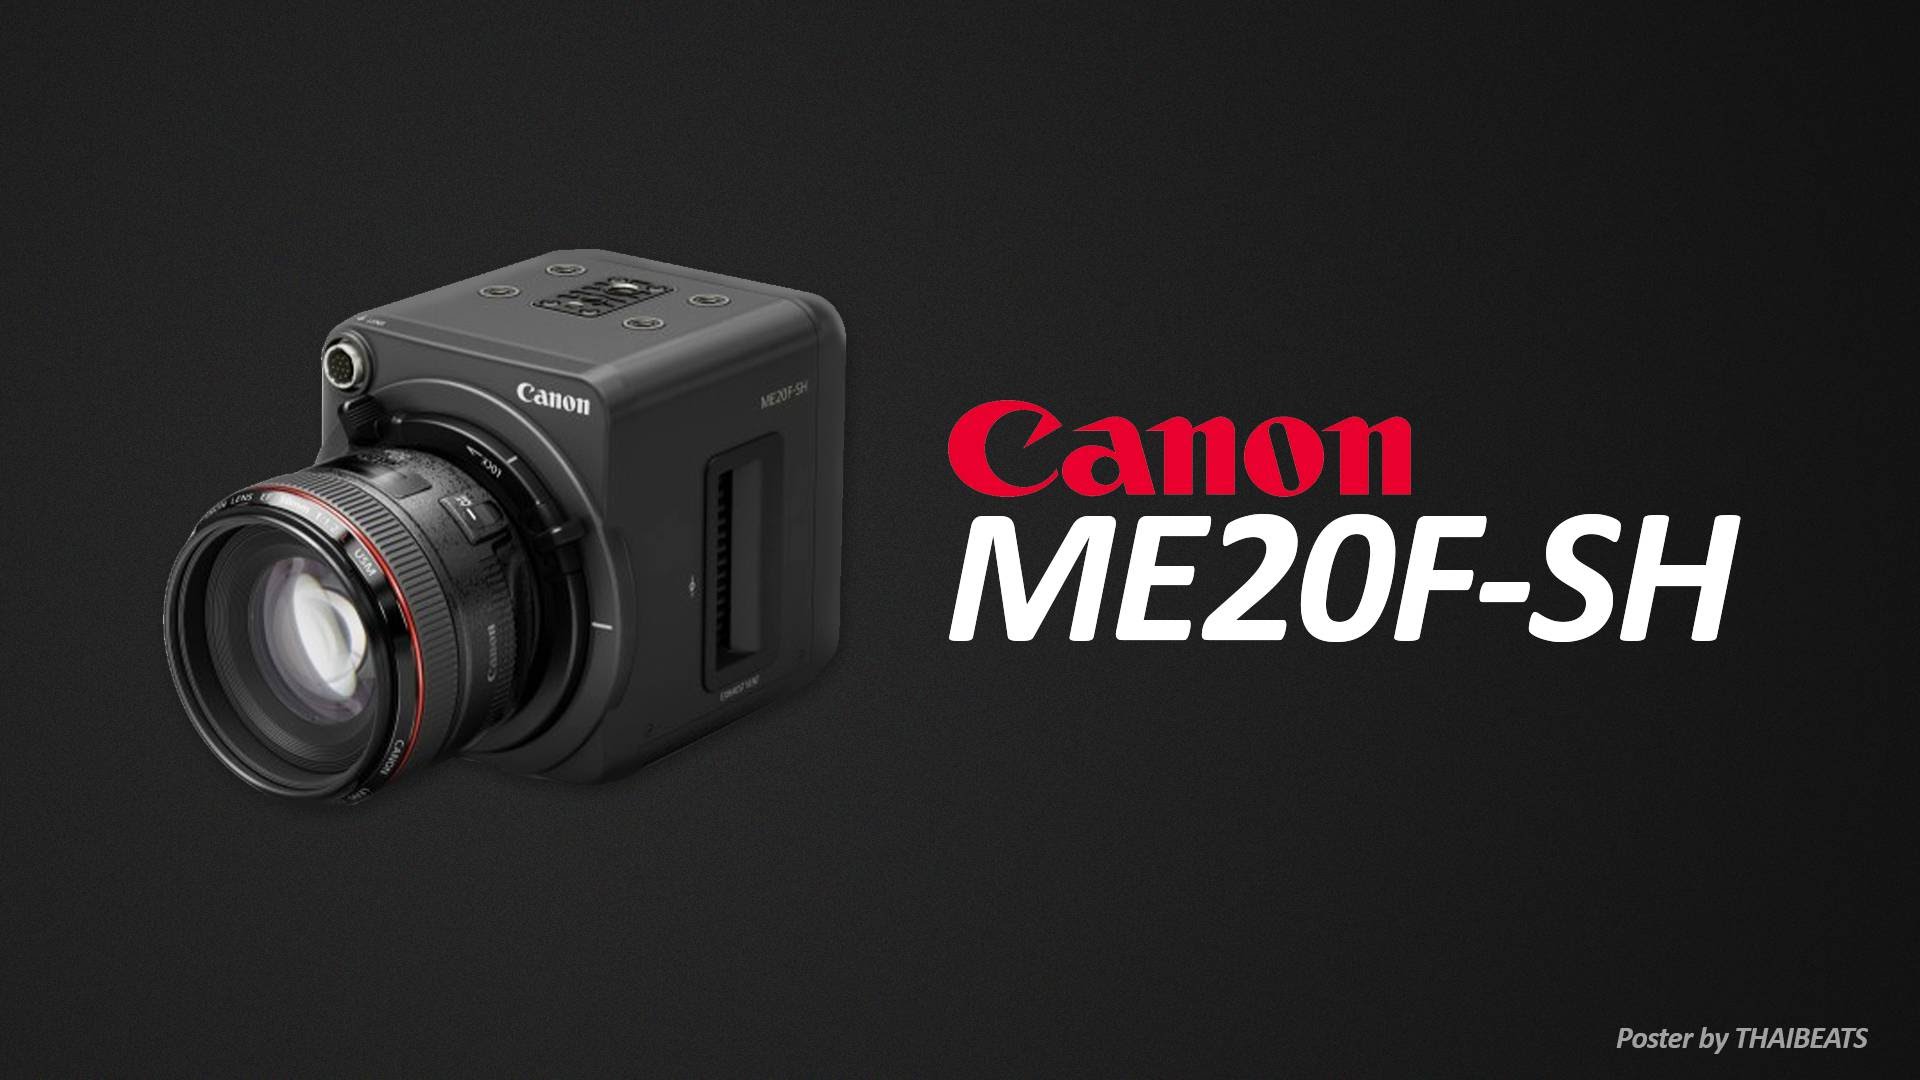 دوربین فیلمبرداری جدید کانن ME20F-SH